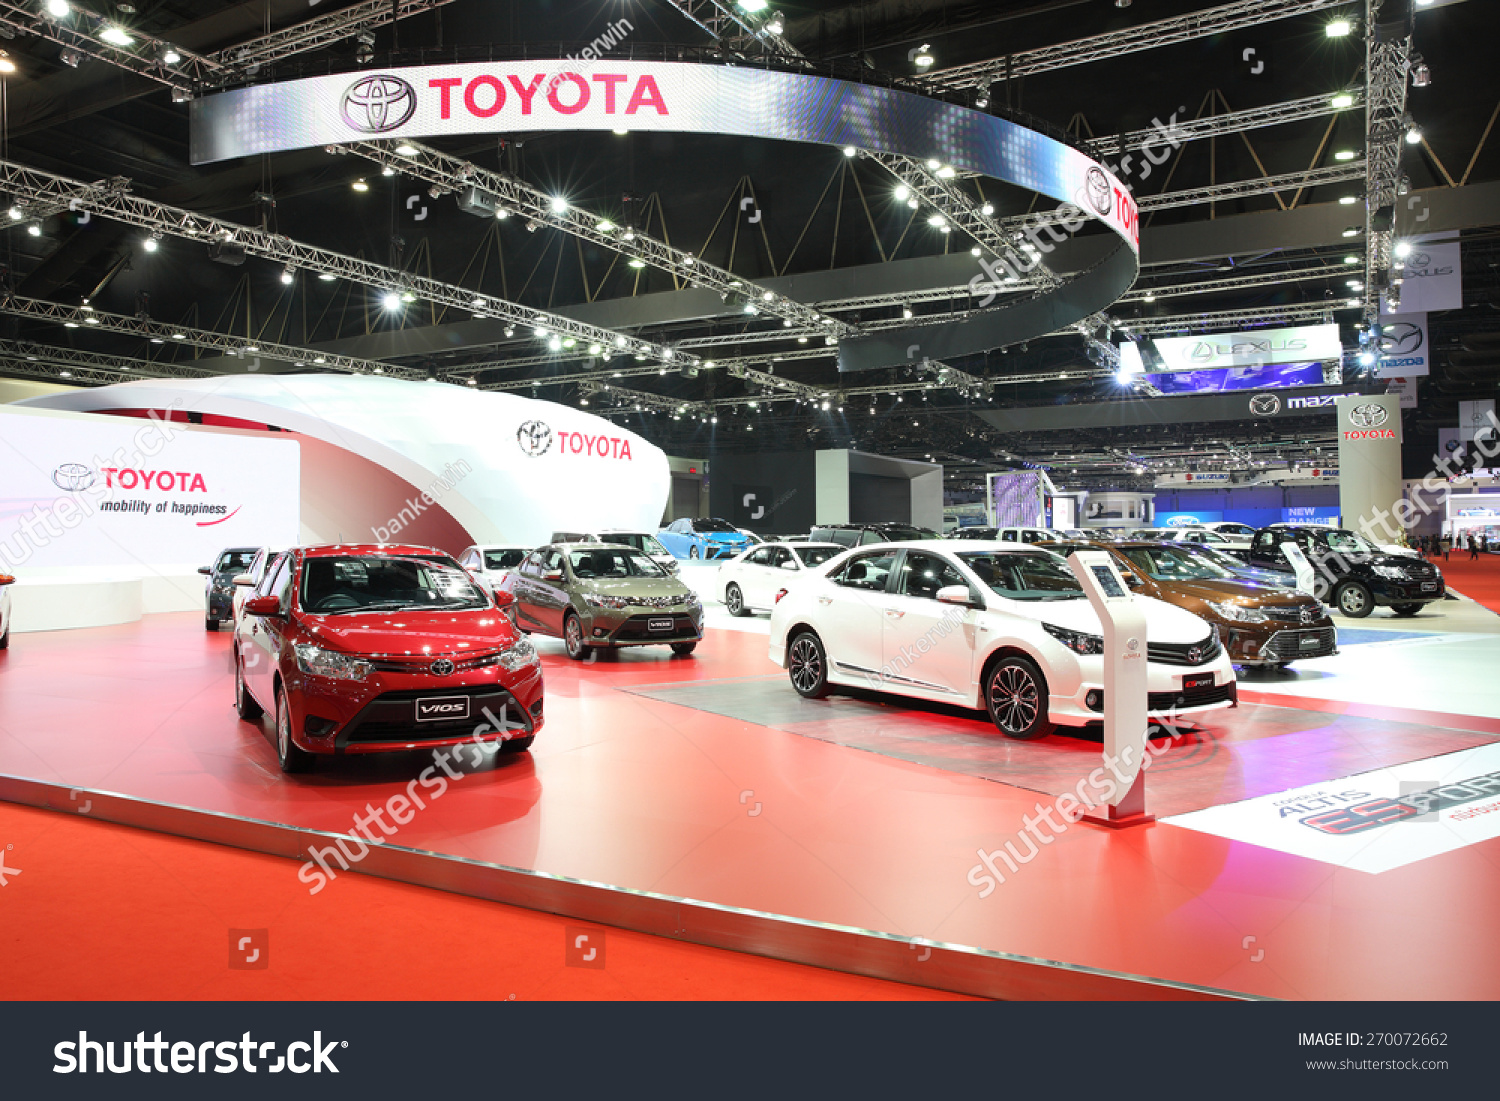 Toyota car show